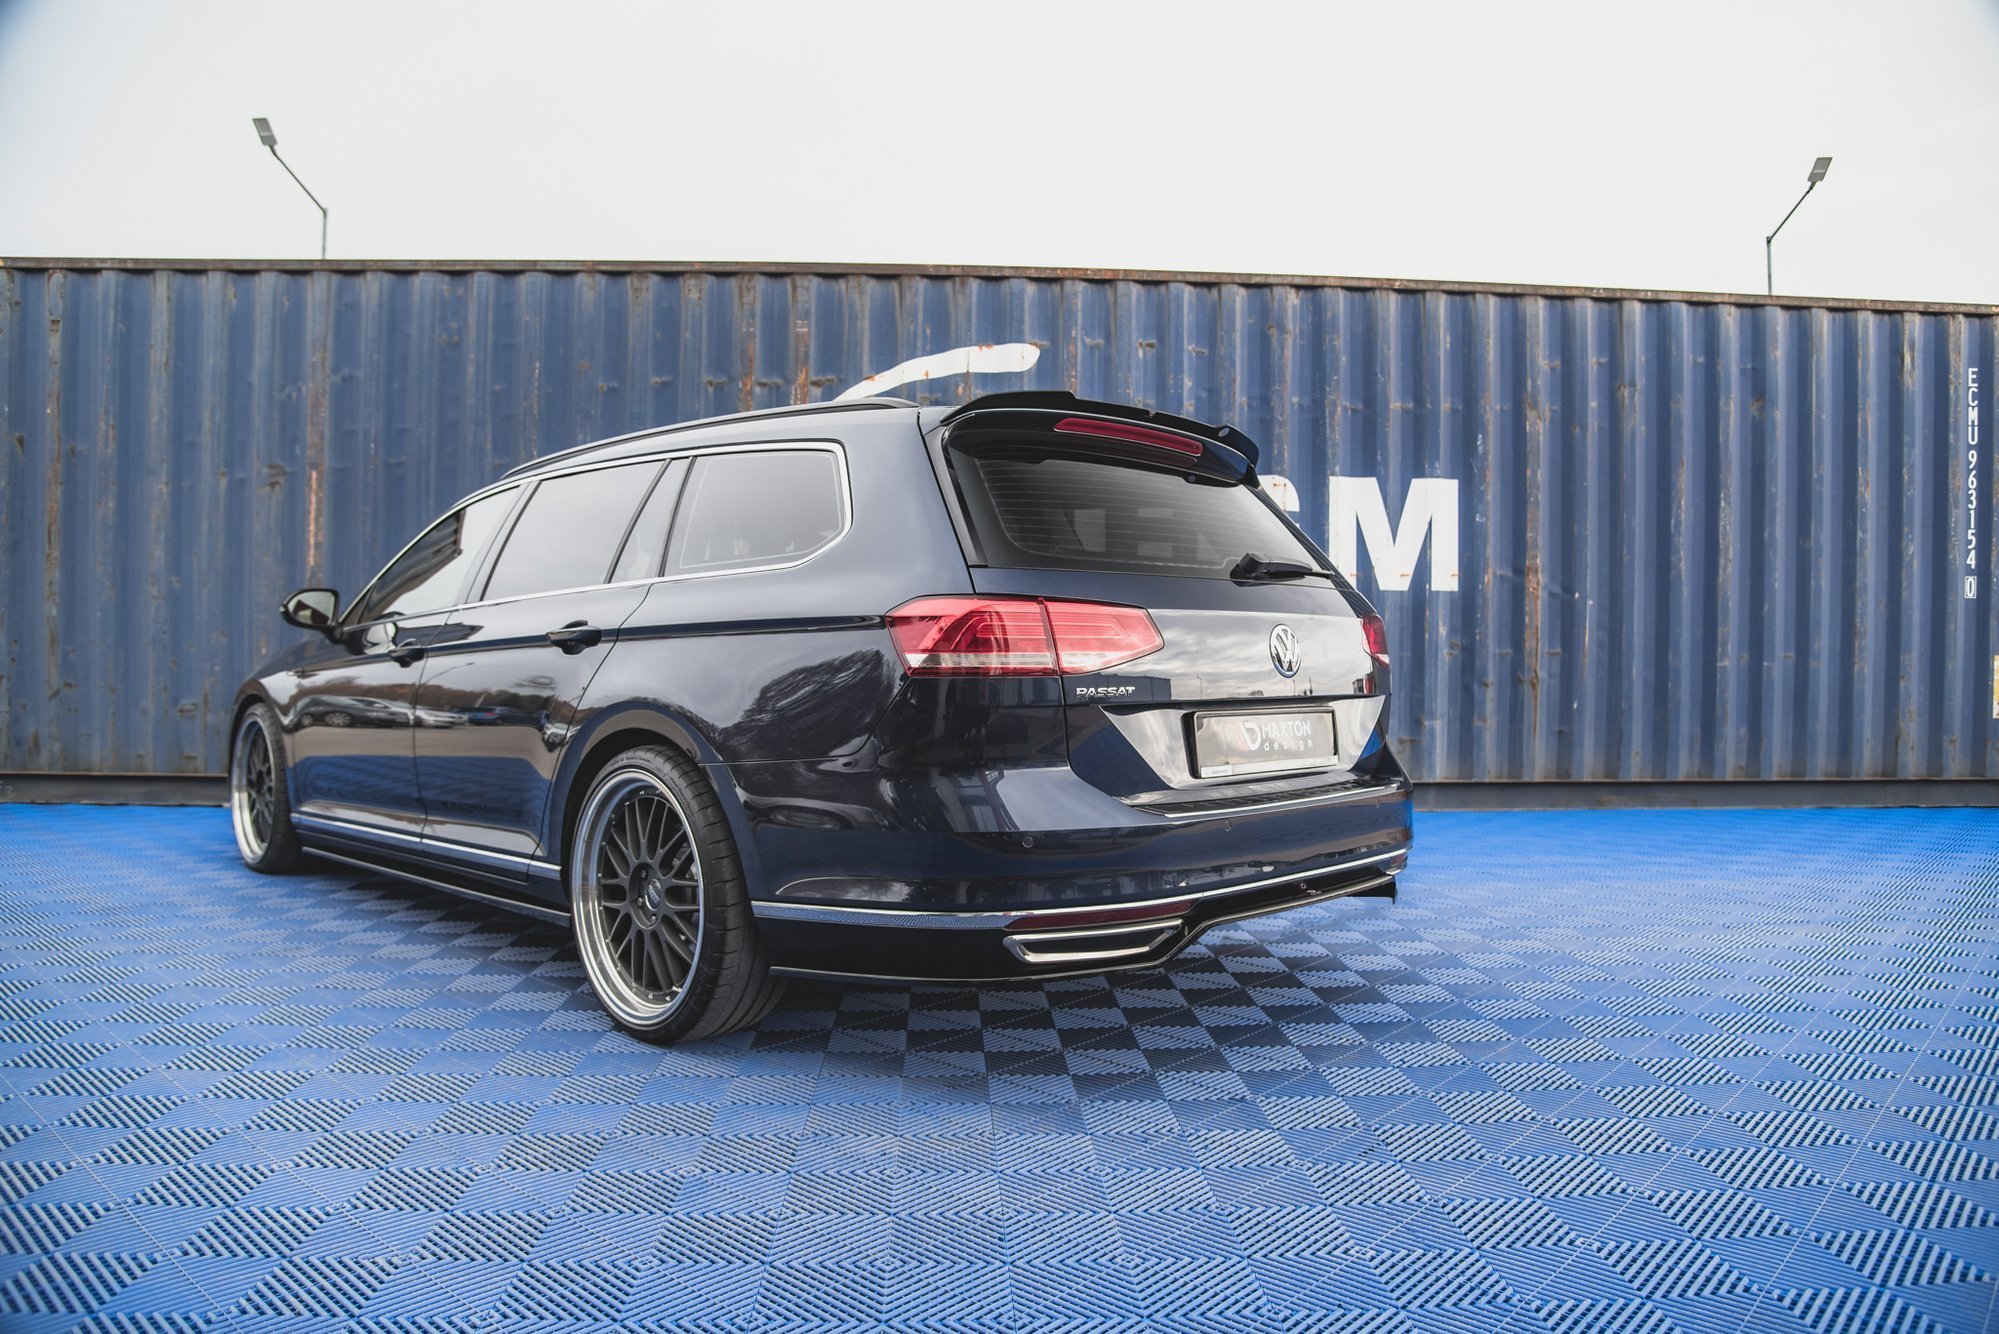 Maxton Design Mittlerer Diffusor Heck Ansatz für Volkswagen Passat B8 schwarz Hochglanz